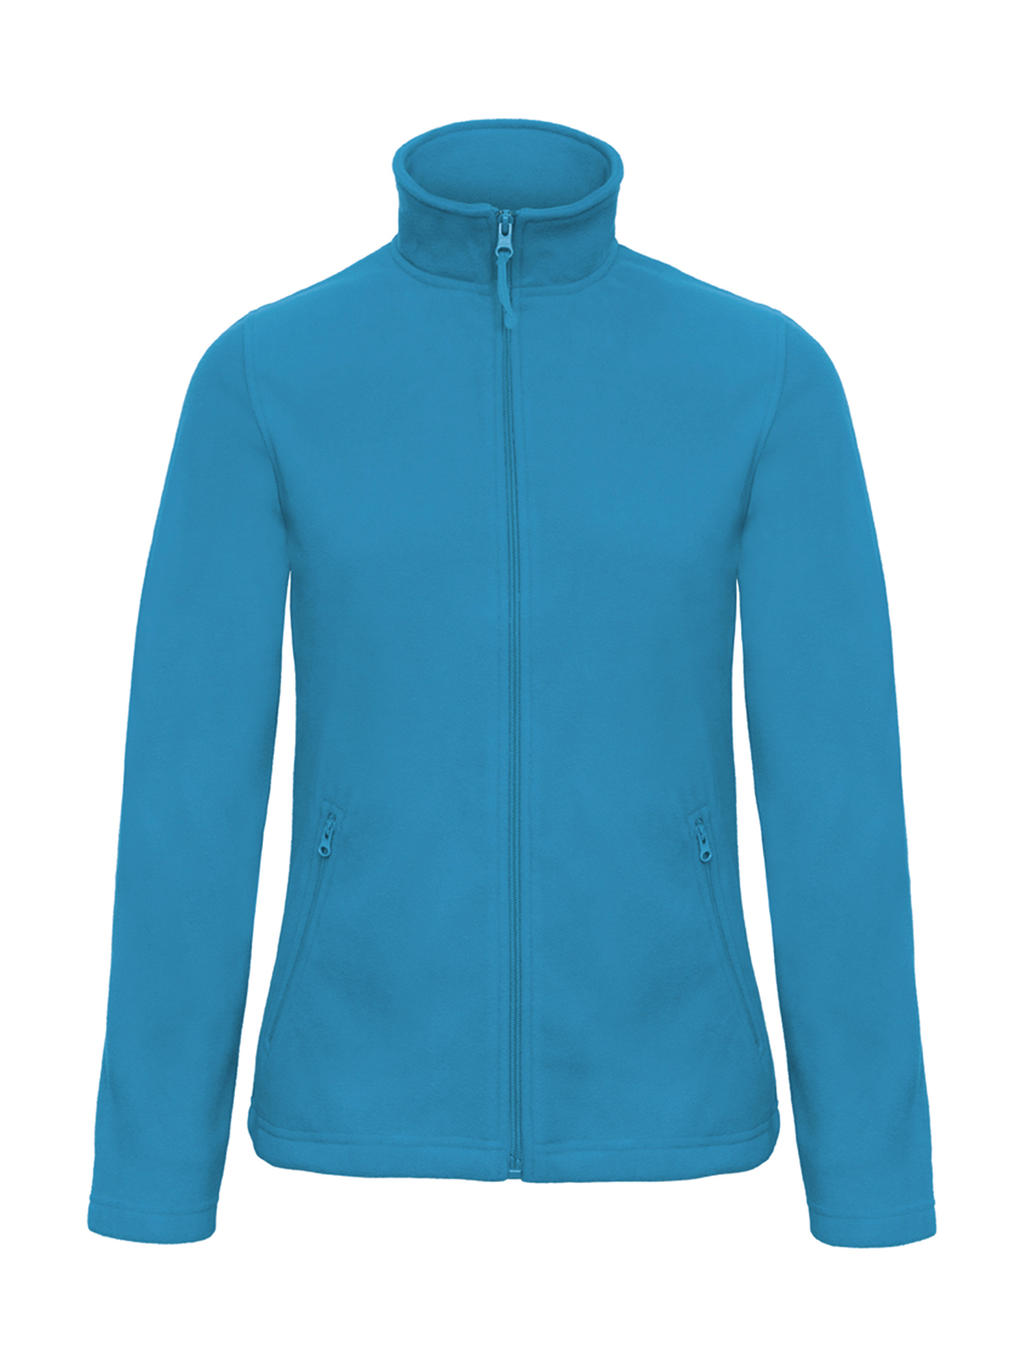 Mikina dámská B&C Micro Fleece - světle modrá, XL